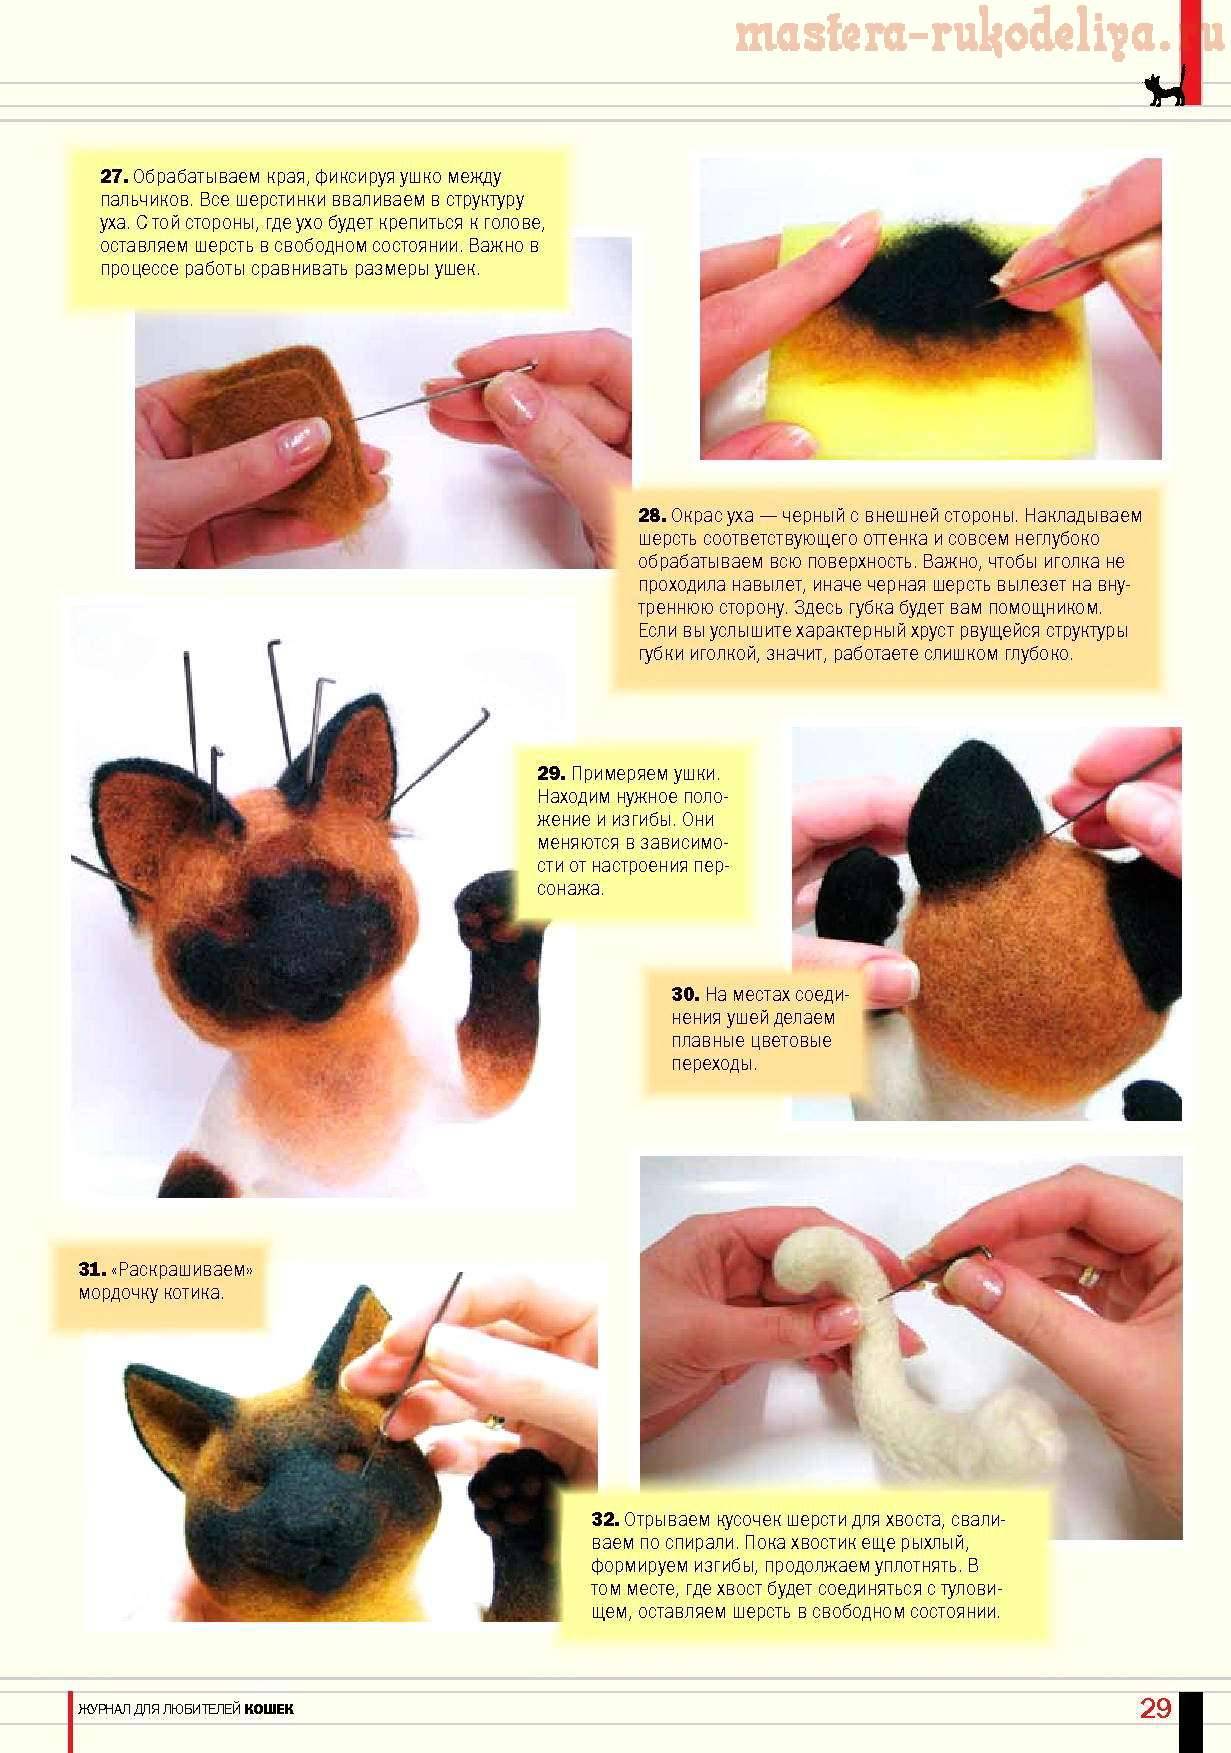 Валяние игрушек: мастер-класс по фелтингу для начинающих, изготовление украшений из шерсти